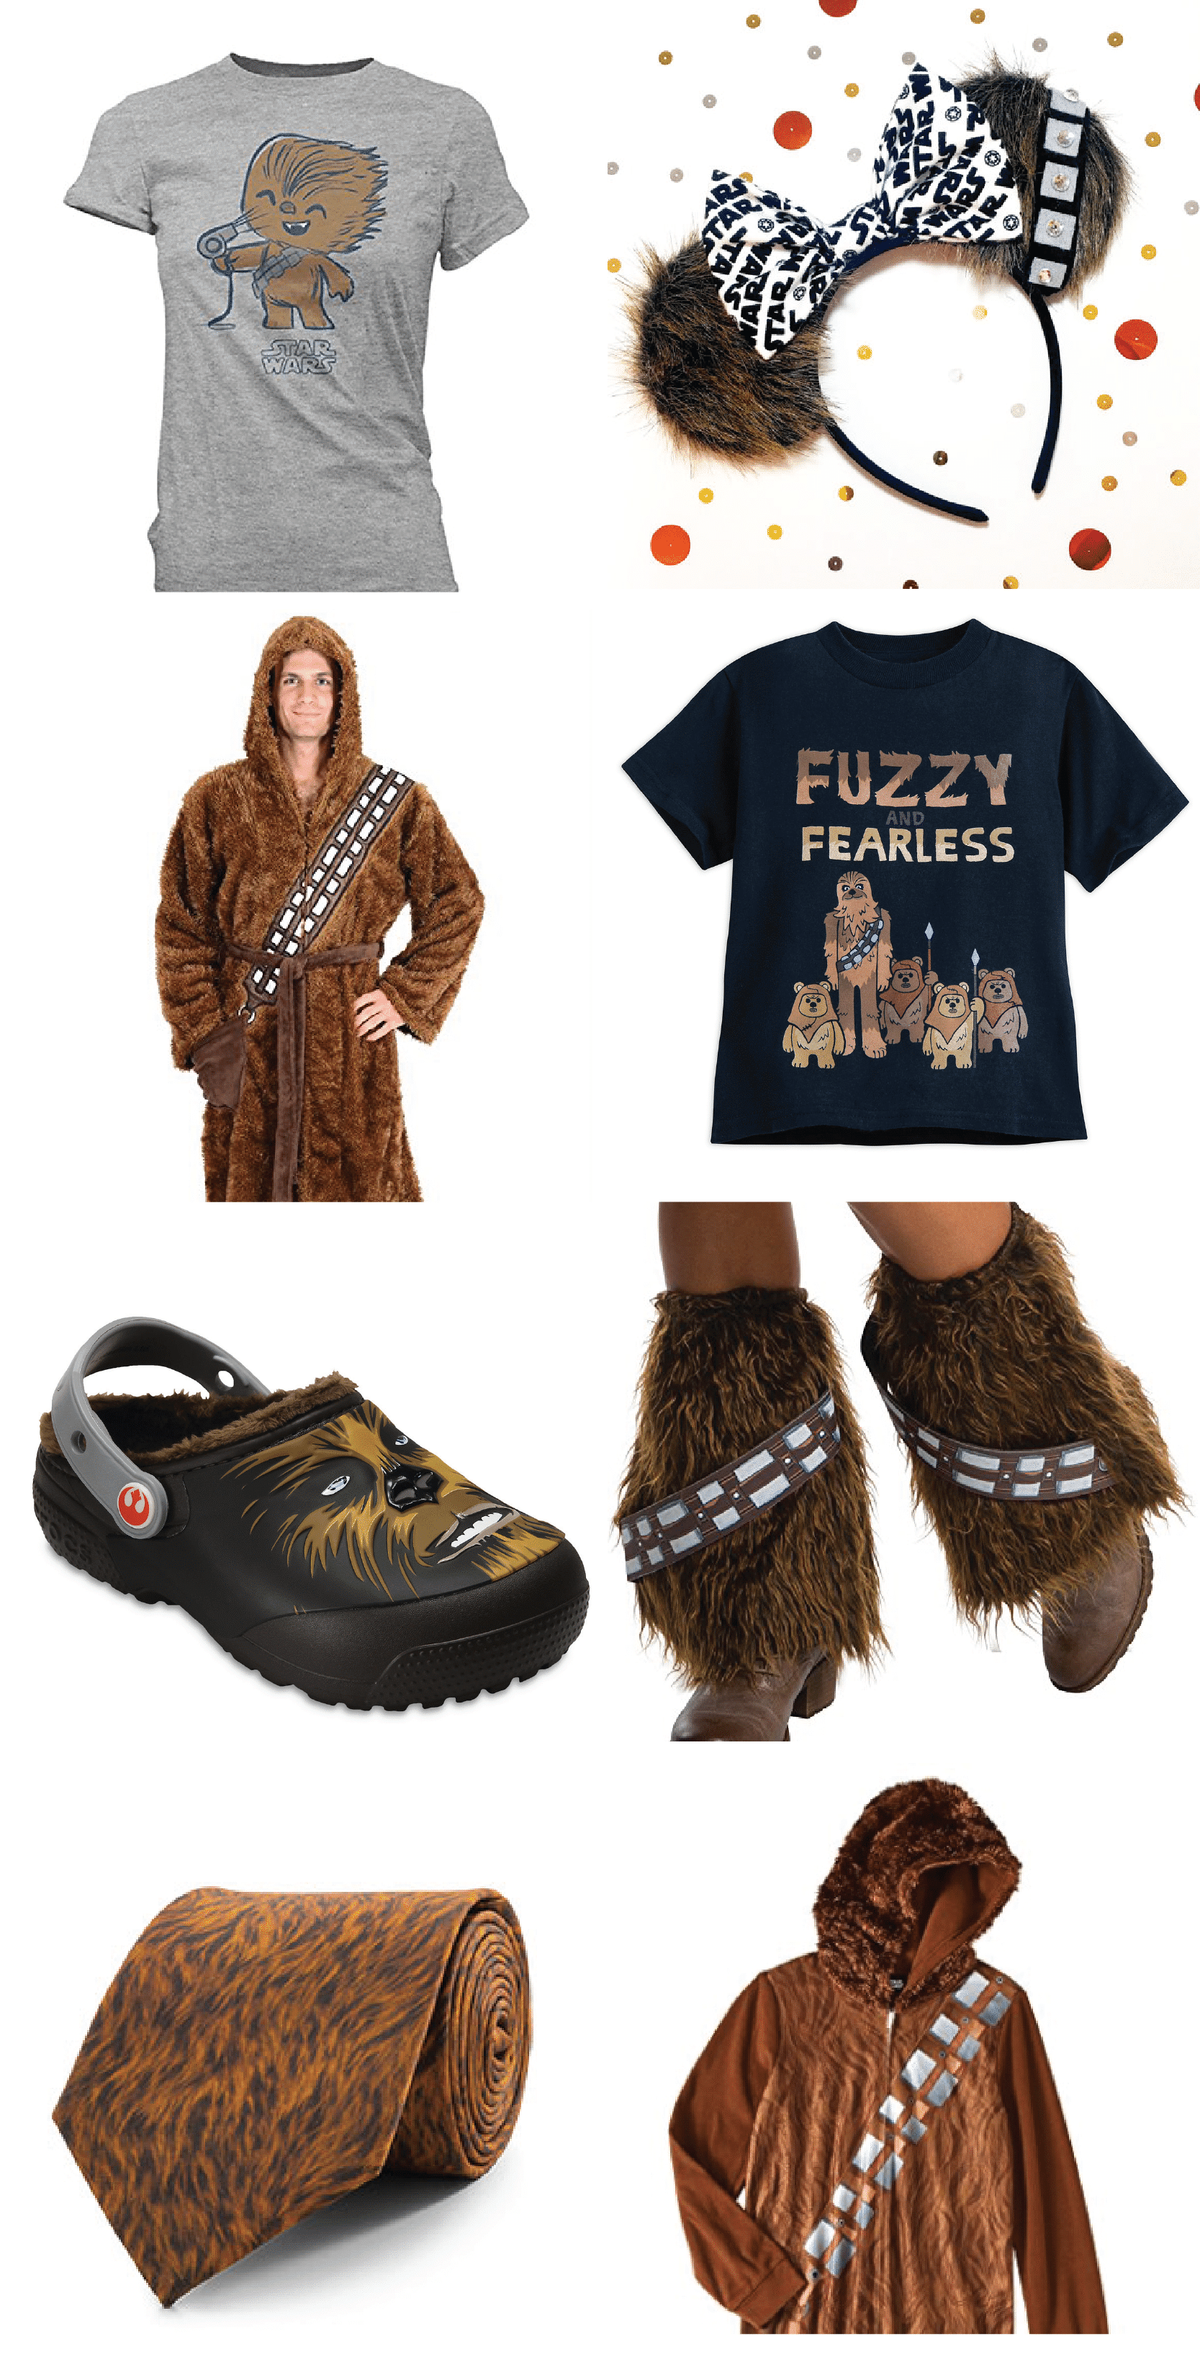 Benötigen Sie ein Star Wars-Geschenk, um es zu einer Party zu bringen? Diese von Chewbacca inspirierten Produkte sind einige der besten Geburtstagsgeschenke, Star Wars-Kleidung oder wirklich nur Produkte für Menschen, die The Last Jedi liebten